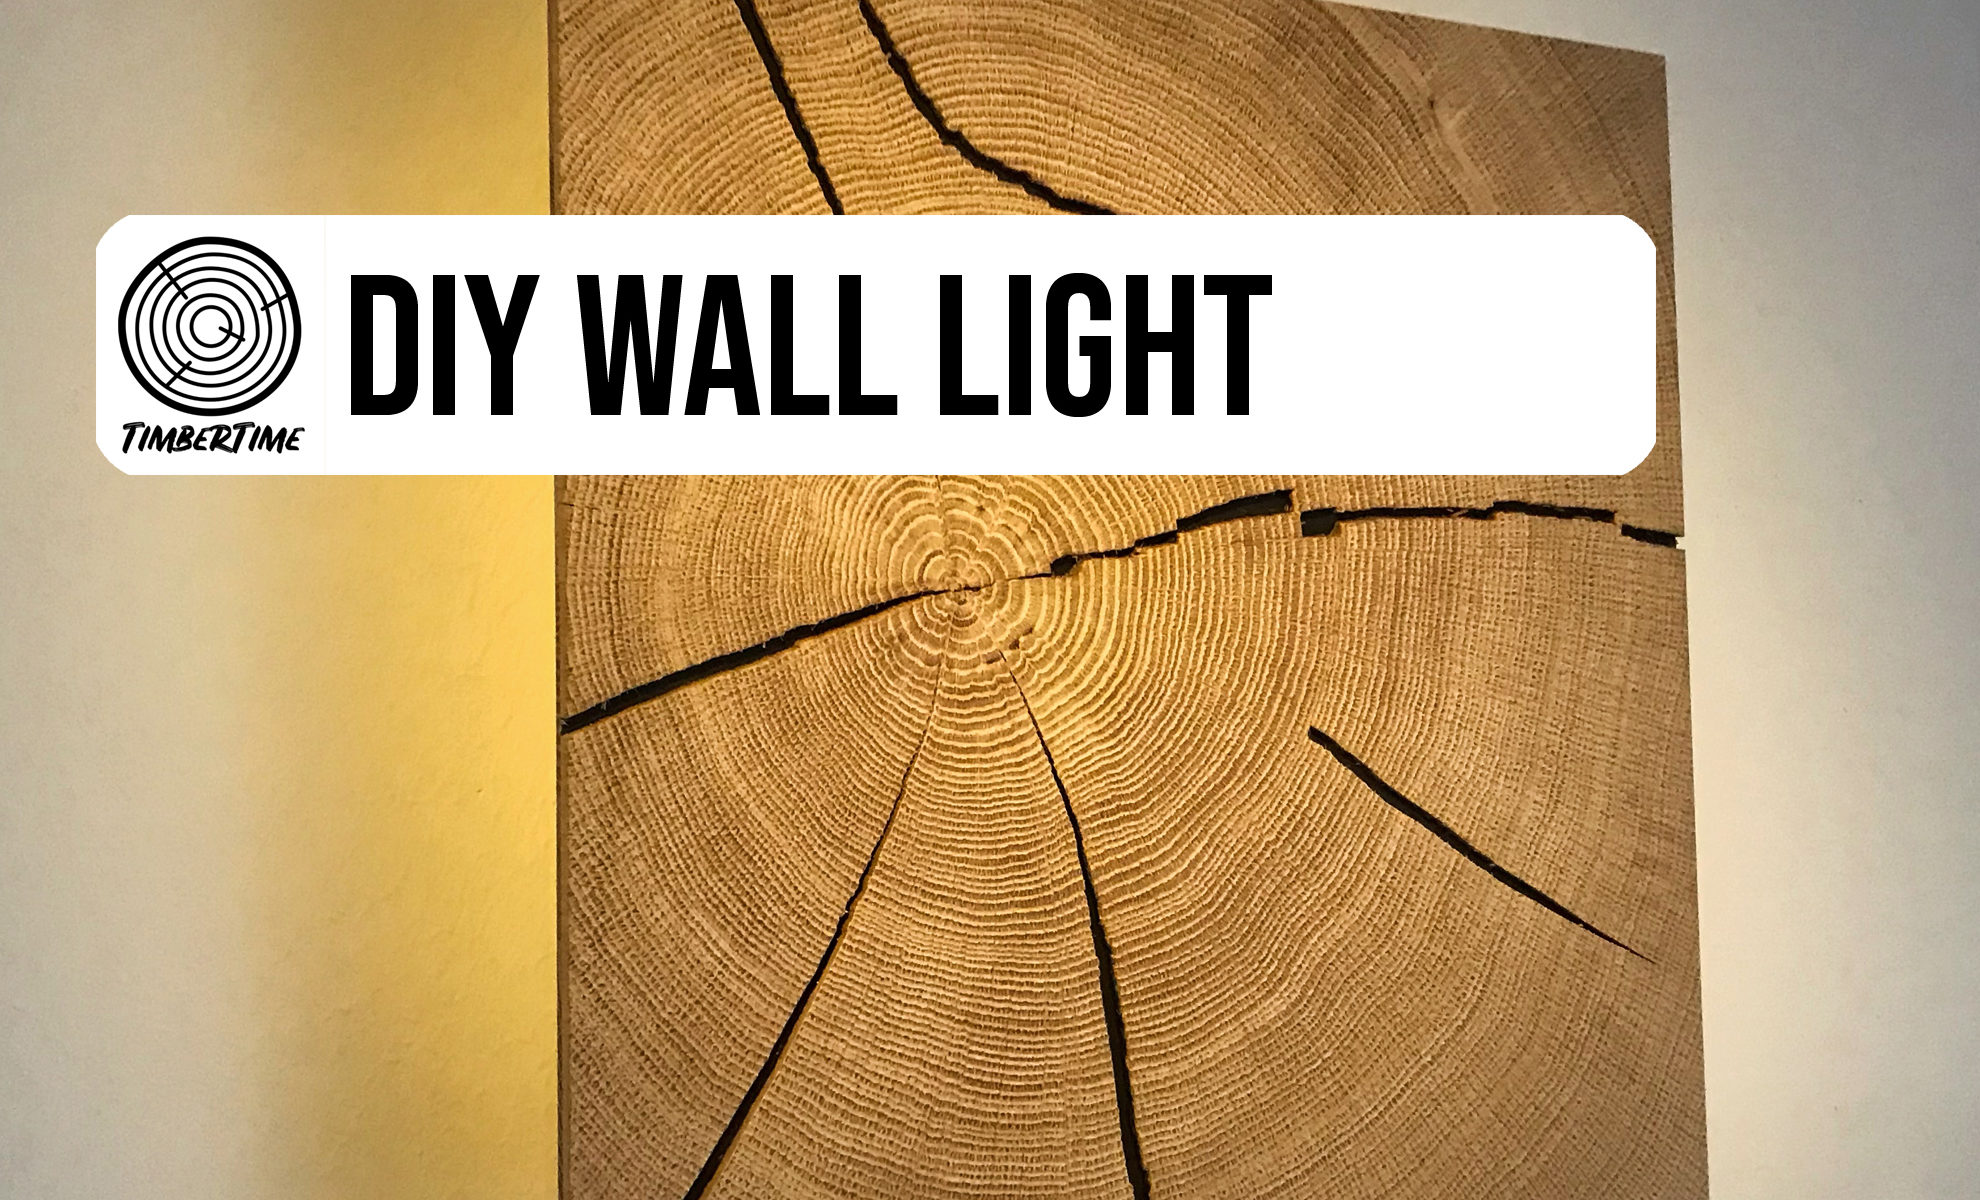 DIY Wall Lamp